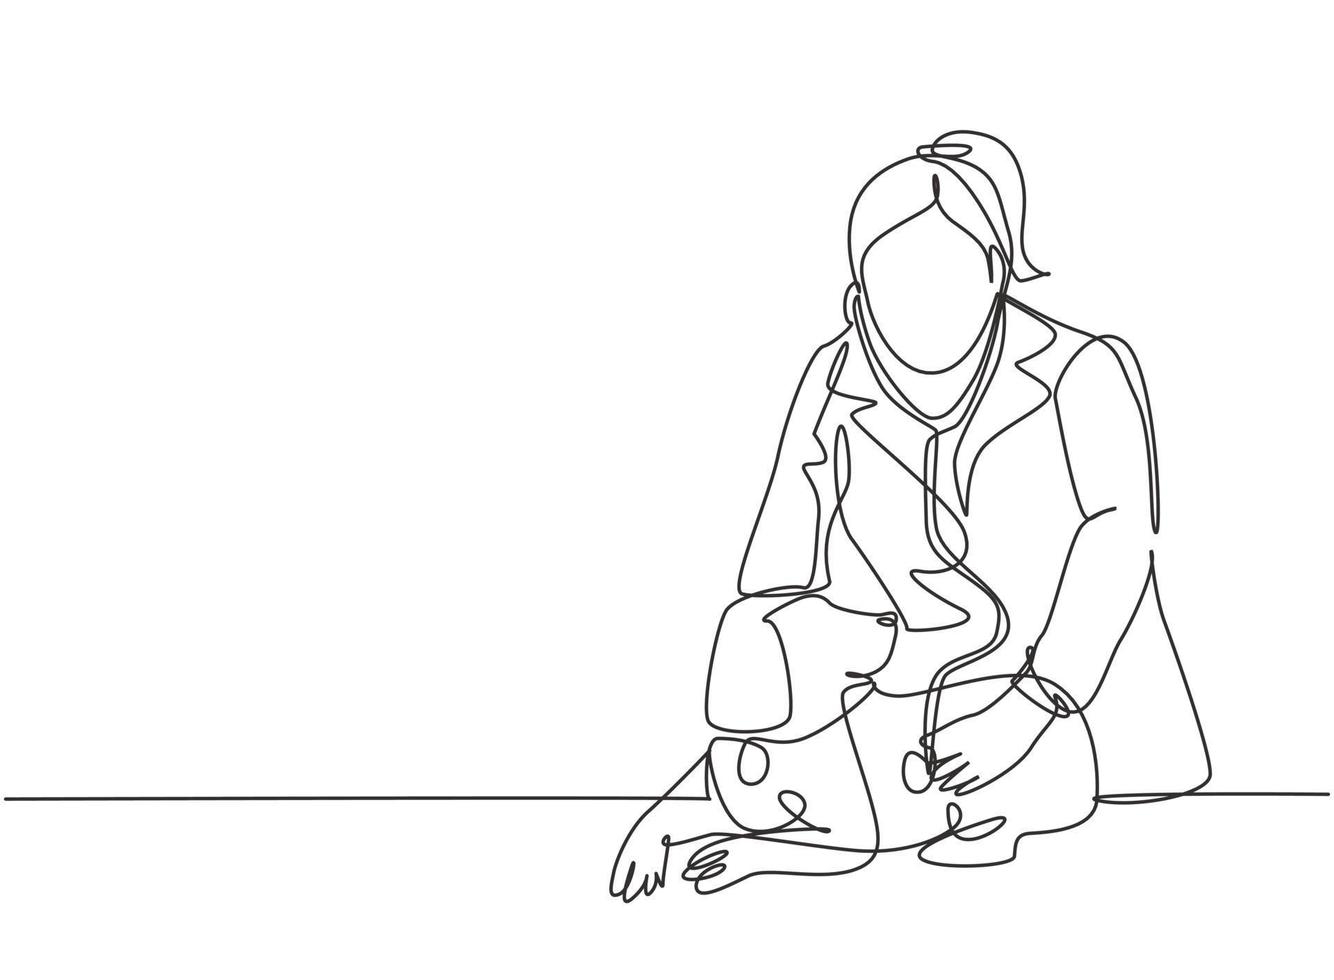 un solo dibujo de una joven veterinaria feliz examinando y cuidando a un perro enfermo debido a un virus. Concepto de servicio de atención médica para mascotas ilustración de vector de diseño de dibujo de línea continua